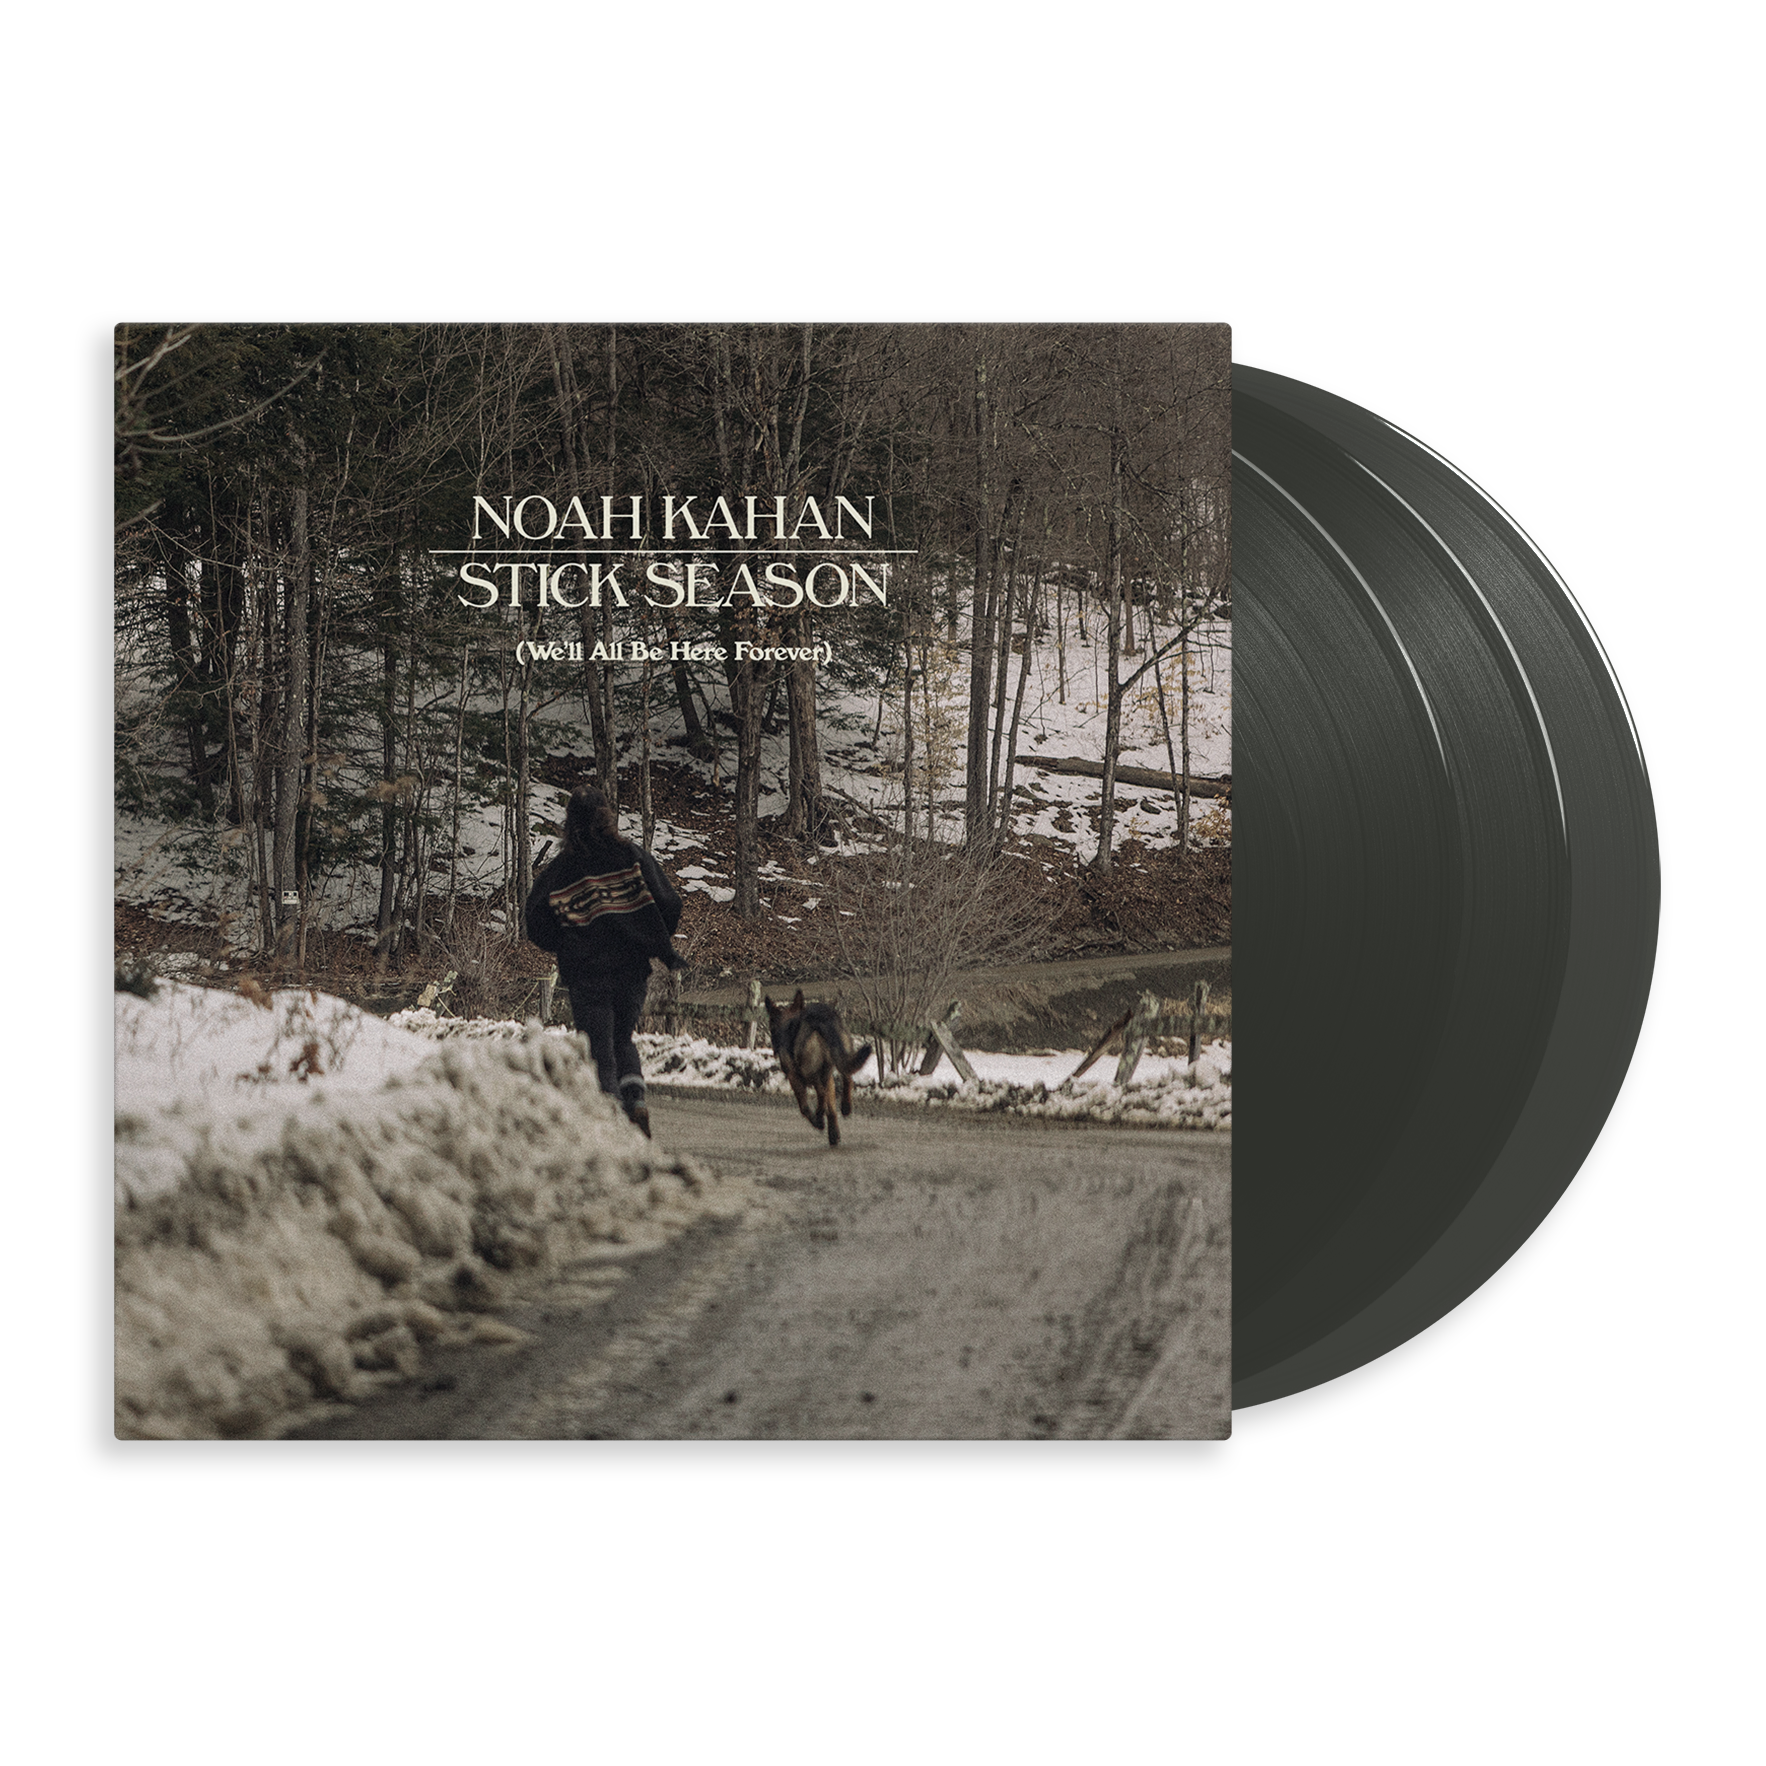 Noah Kahan - Stick Season - We’ll All Be Here Forever: Deluxe 'Black Ice' Vinyl 3LP